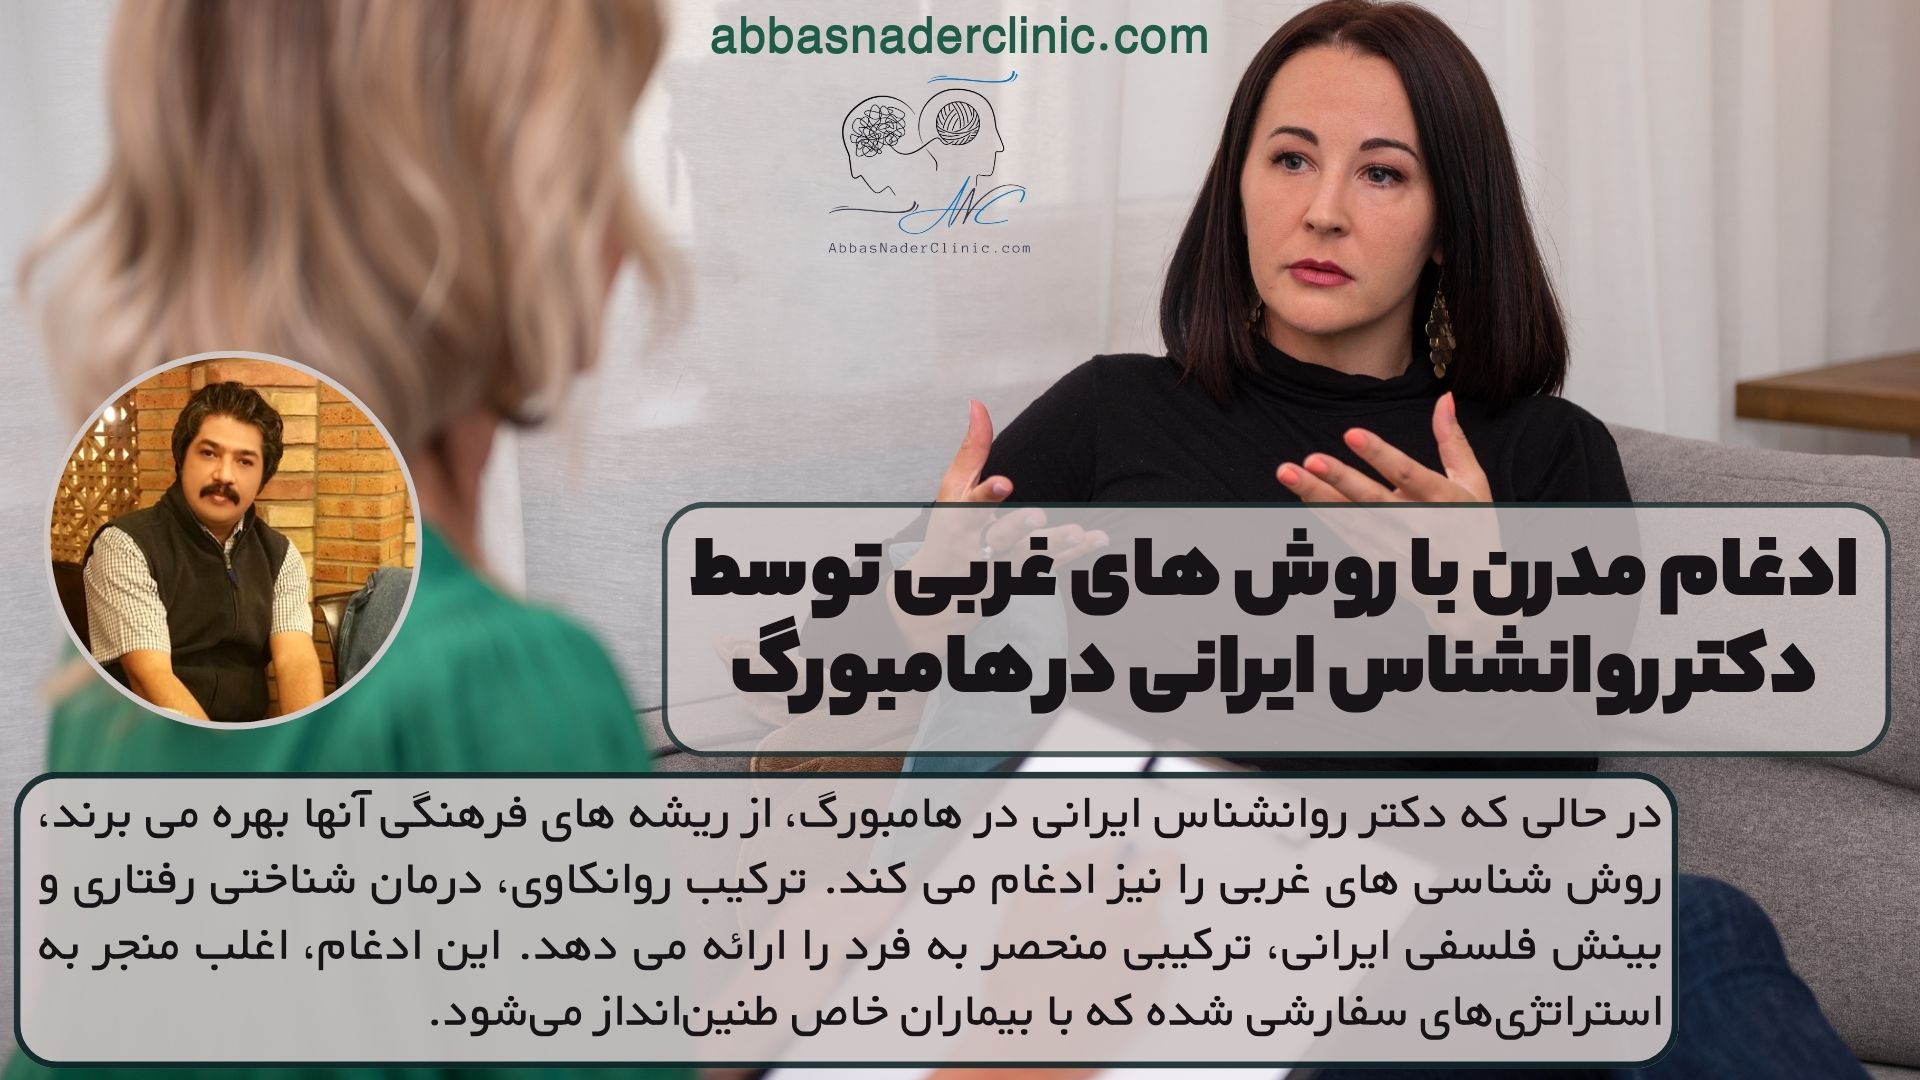 ادغام مدرن با روش های غربی توسط دکتر روانشناس ایرانی در هامبورگ